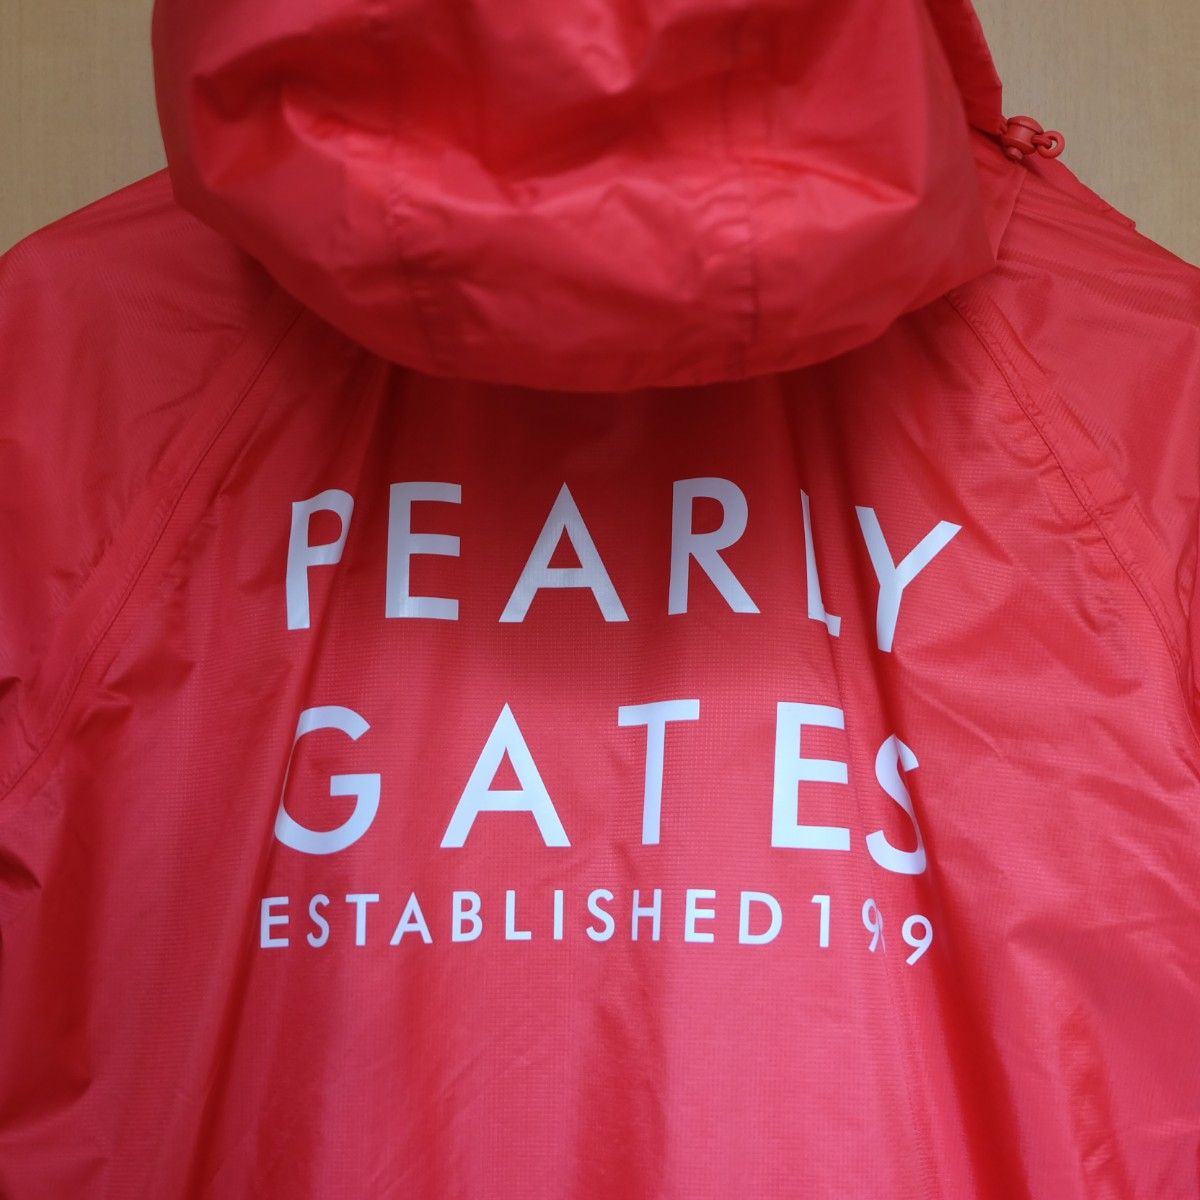 PEARLY GATES 1989 パーリーゲイツ ウインドブレーカー 赤 red レッド レディース 防風 撥水 ゴルフウェア